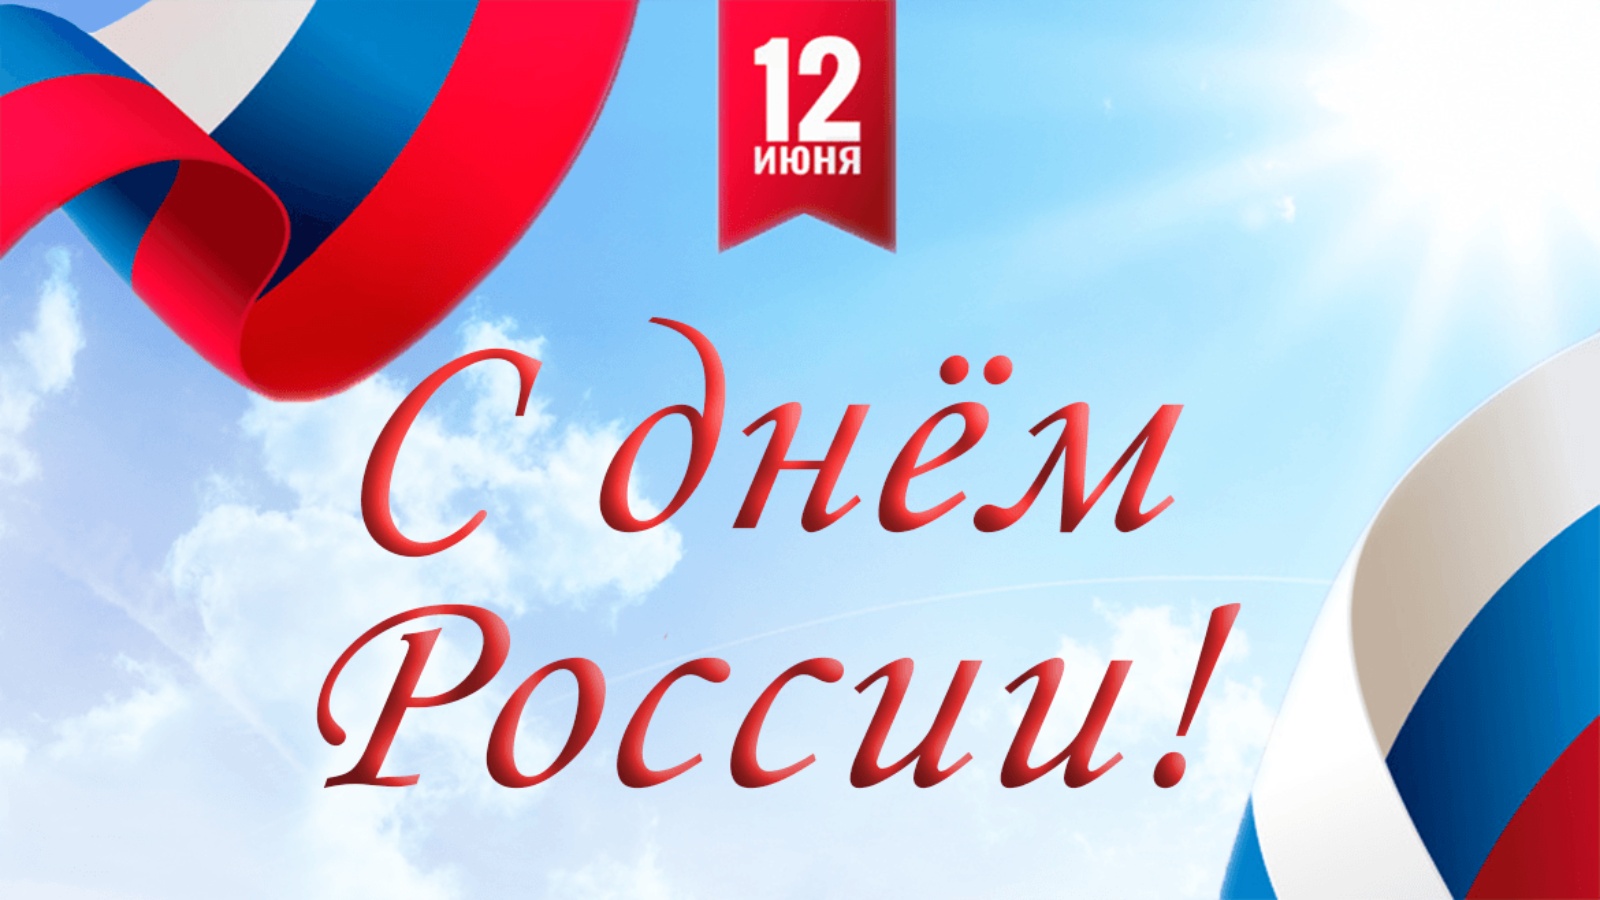 20 лет дня россии